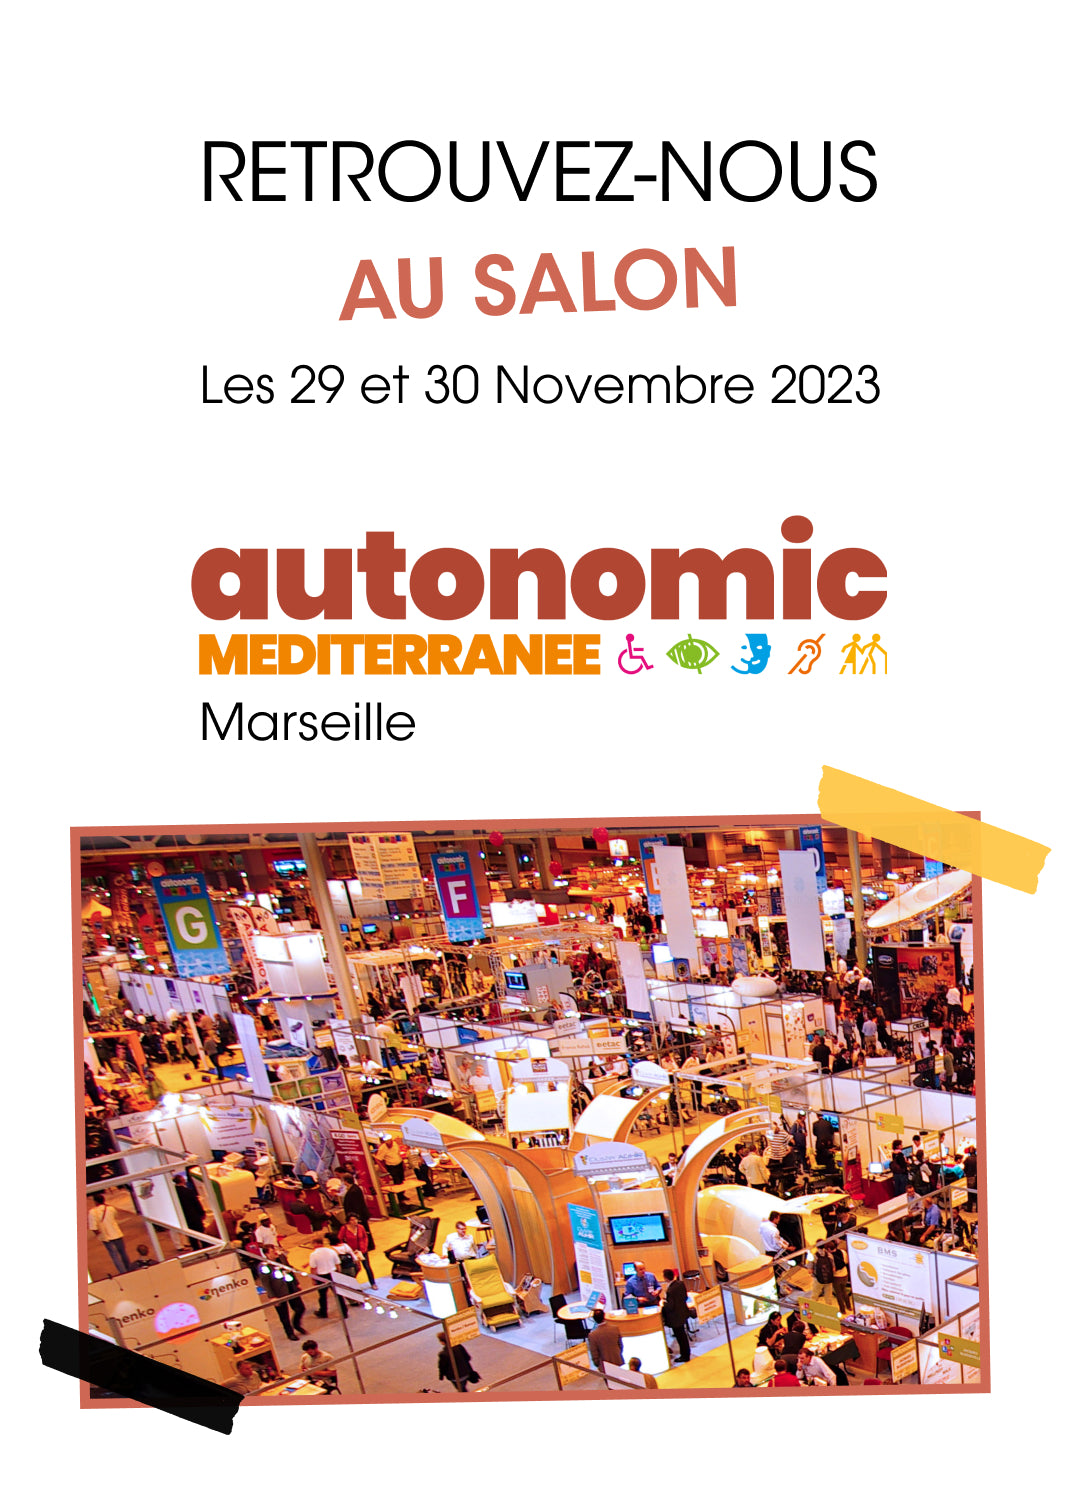 Salon Autonomic Méditérrannée - Omni vous donne rdv les 29 et 30 novembre à Marseille.